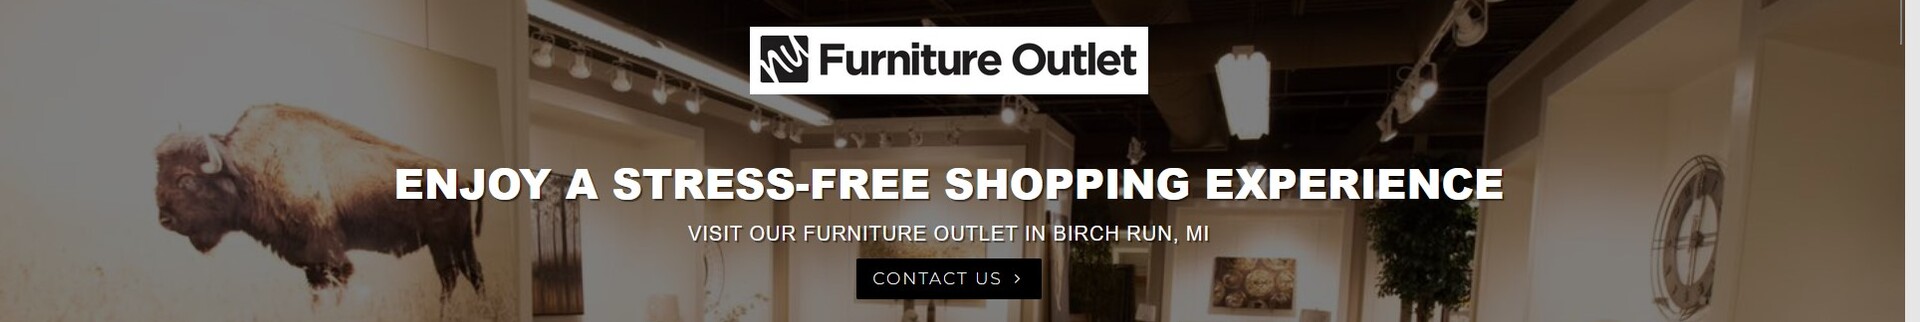 NU Furniture Outlet's banner image.